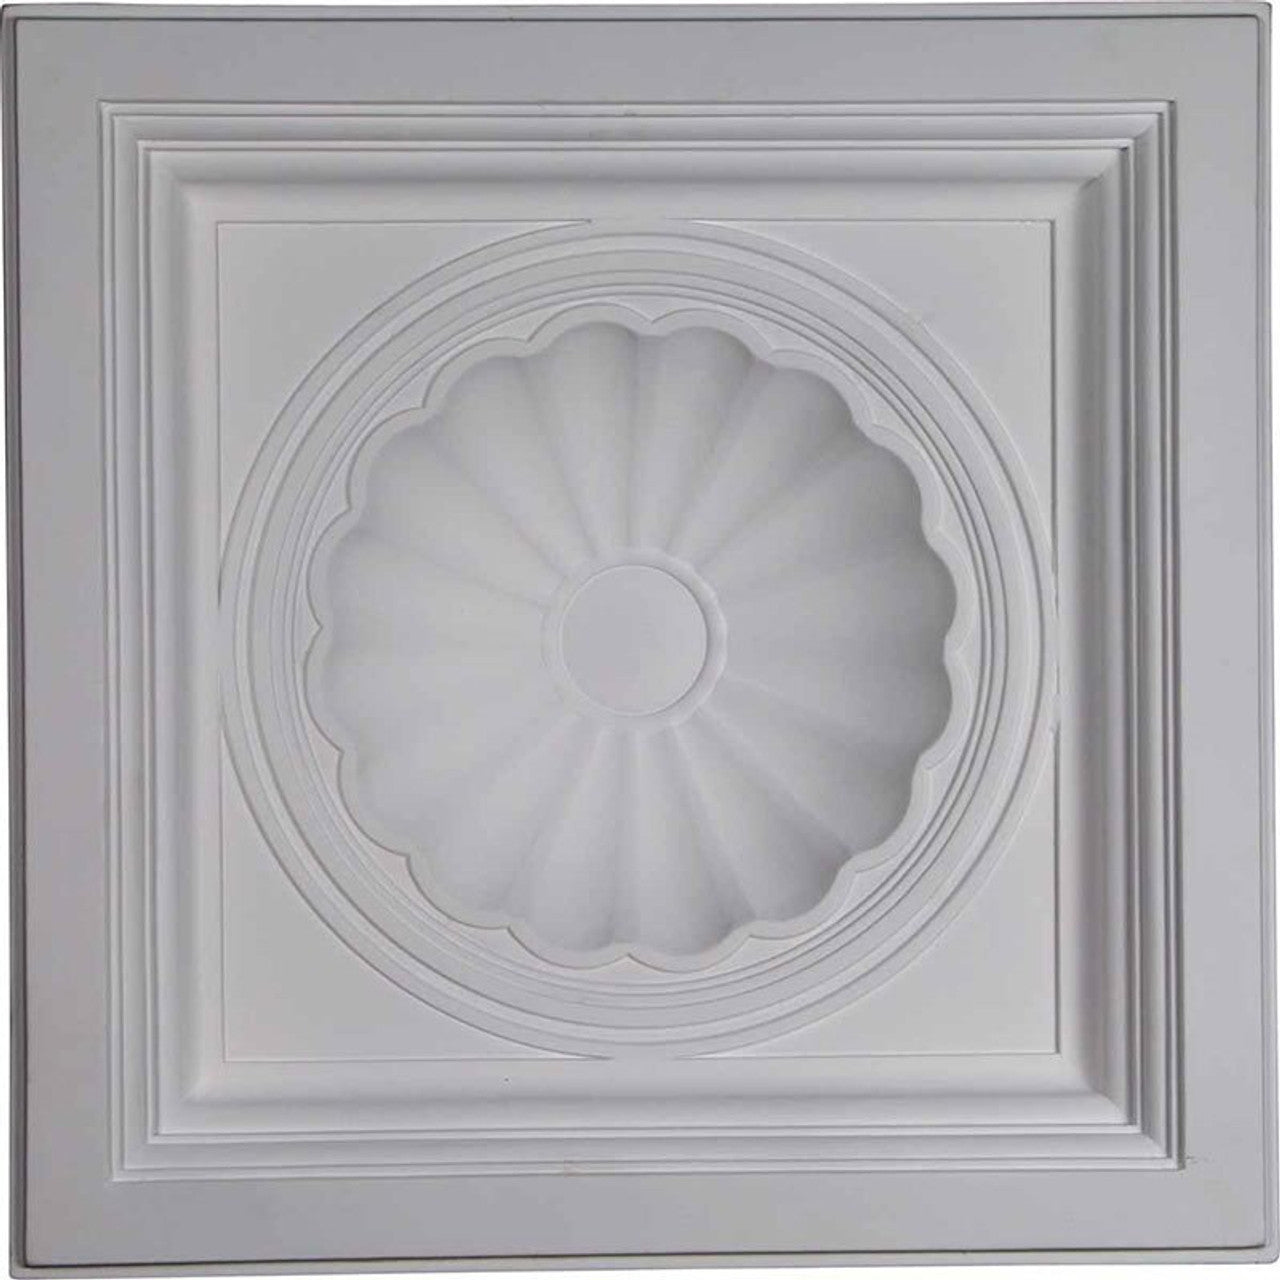 Shell - Urethane Ceiling Tile - 24"x24"